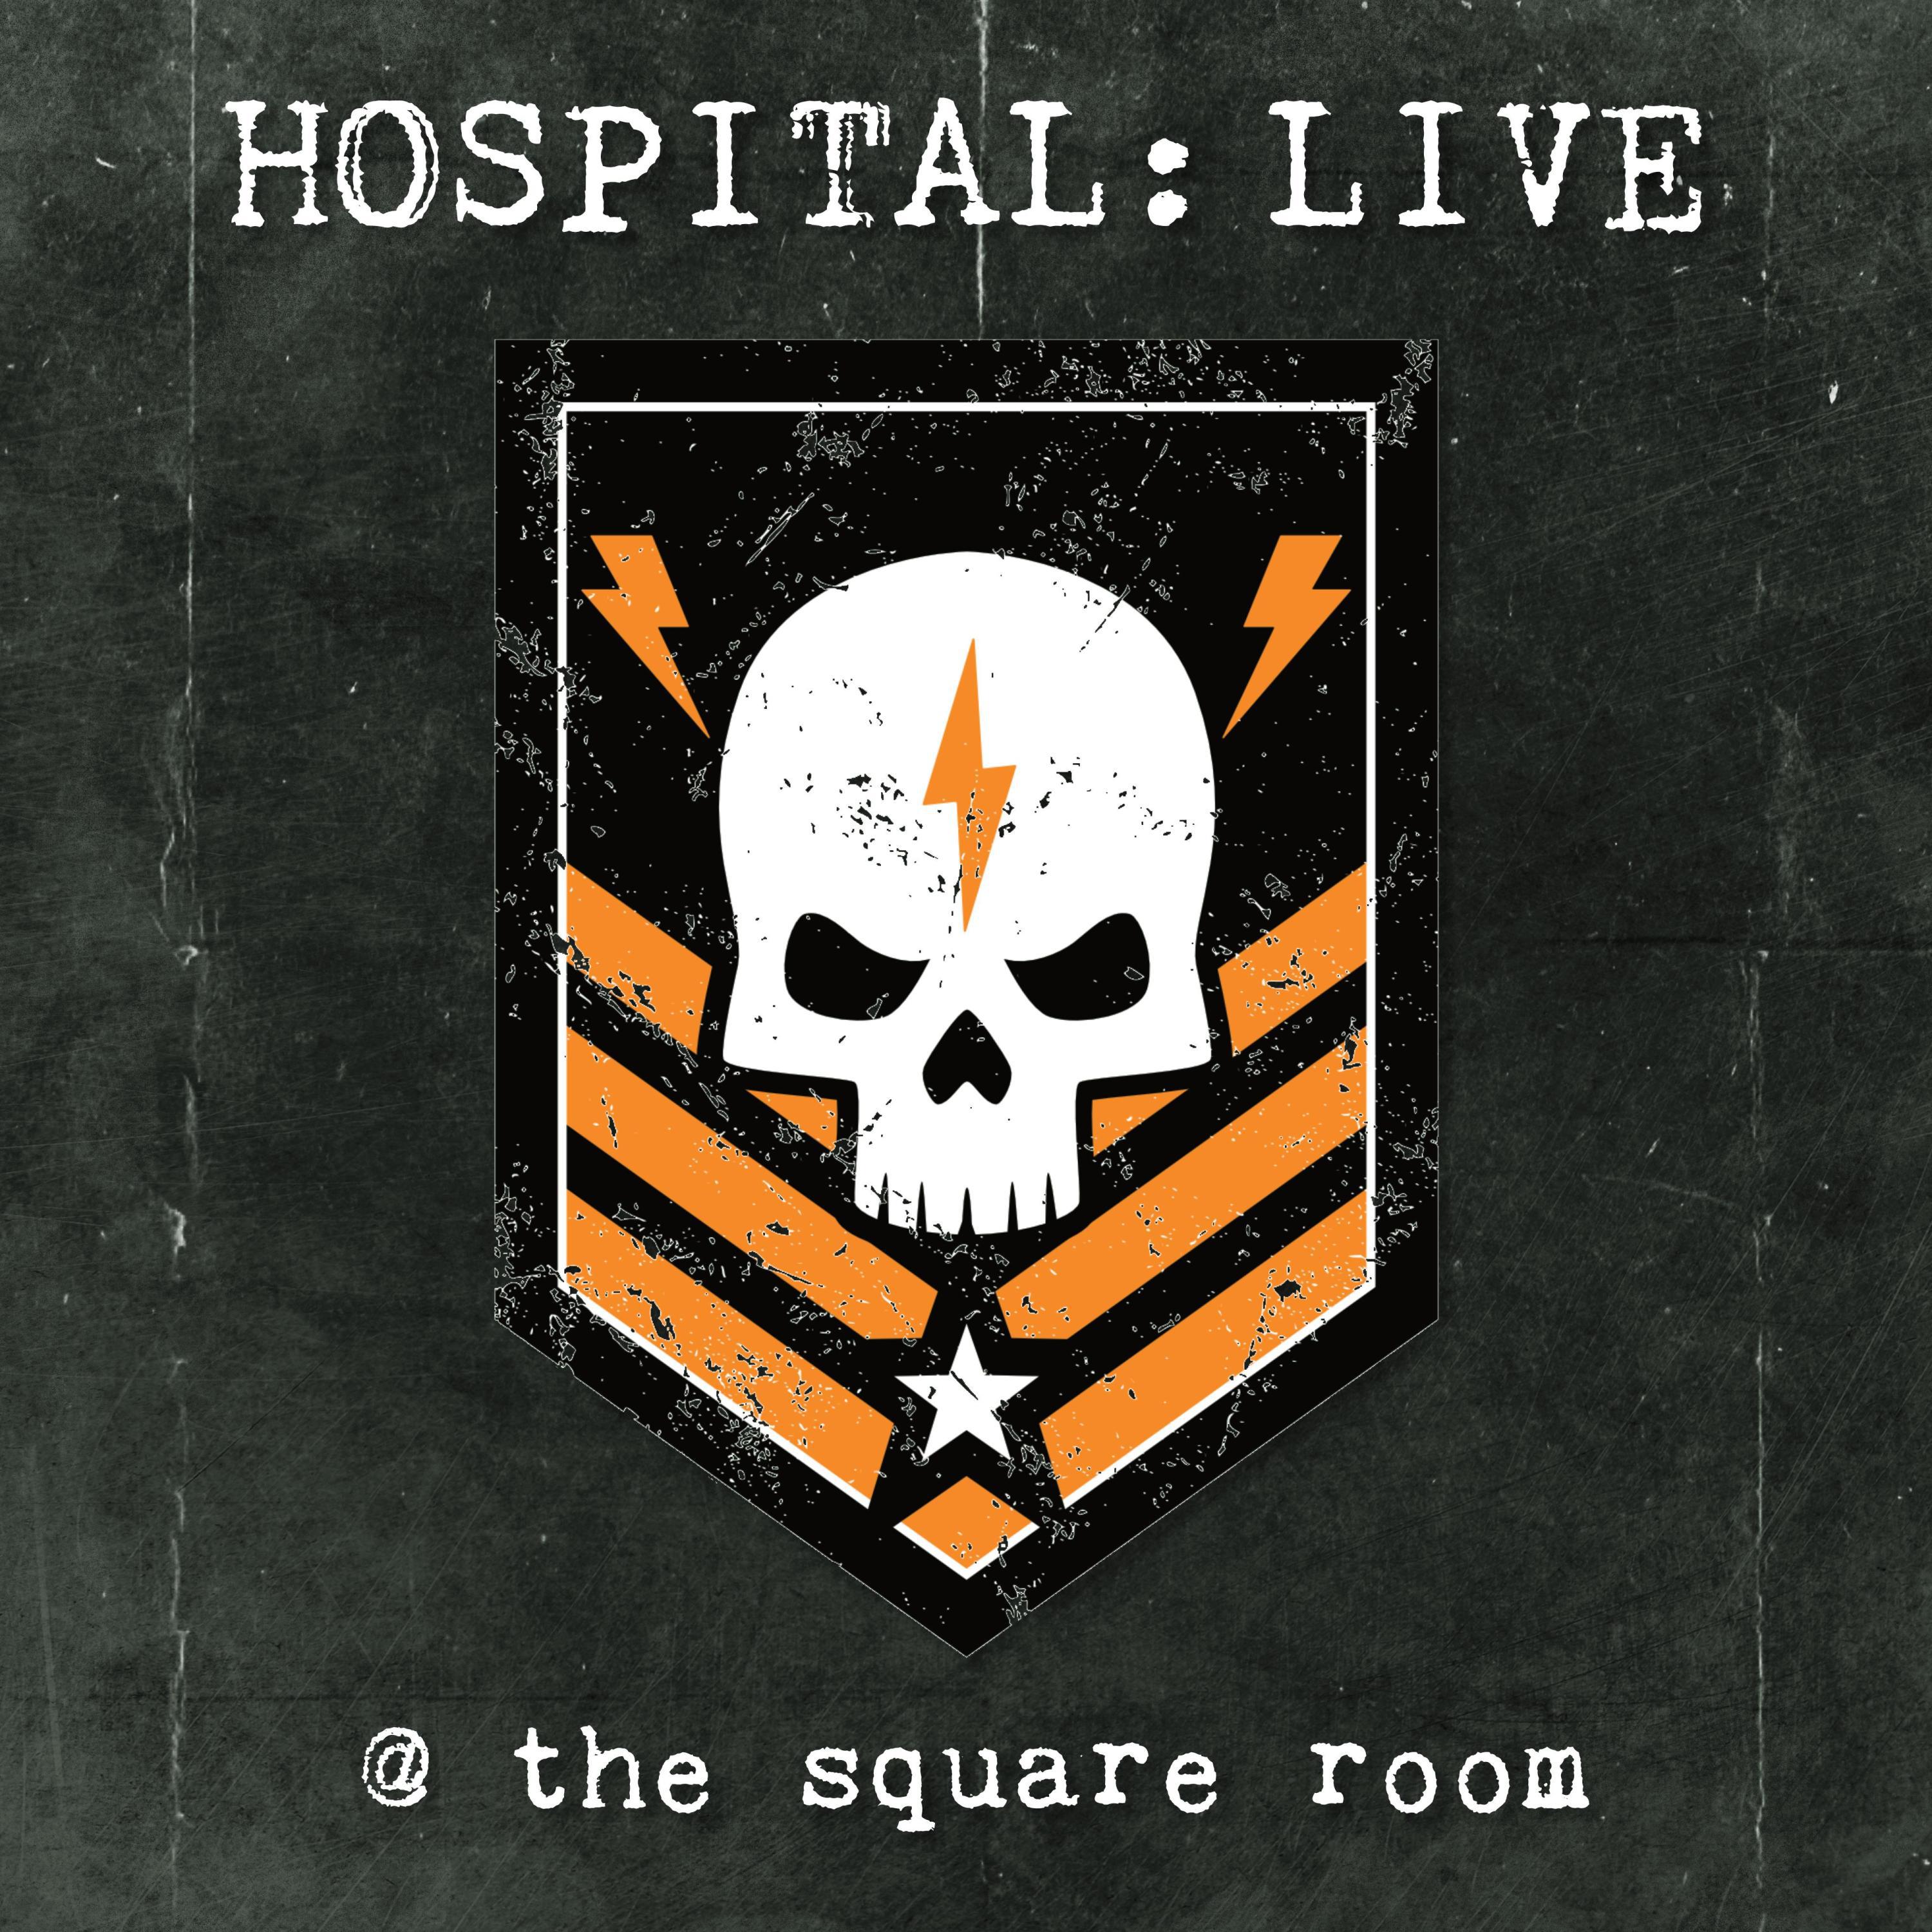 Hospital - The Wayside (Live)